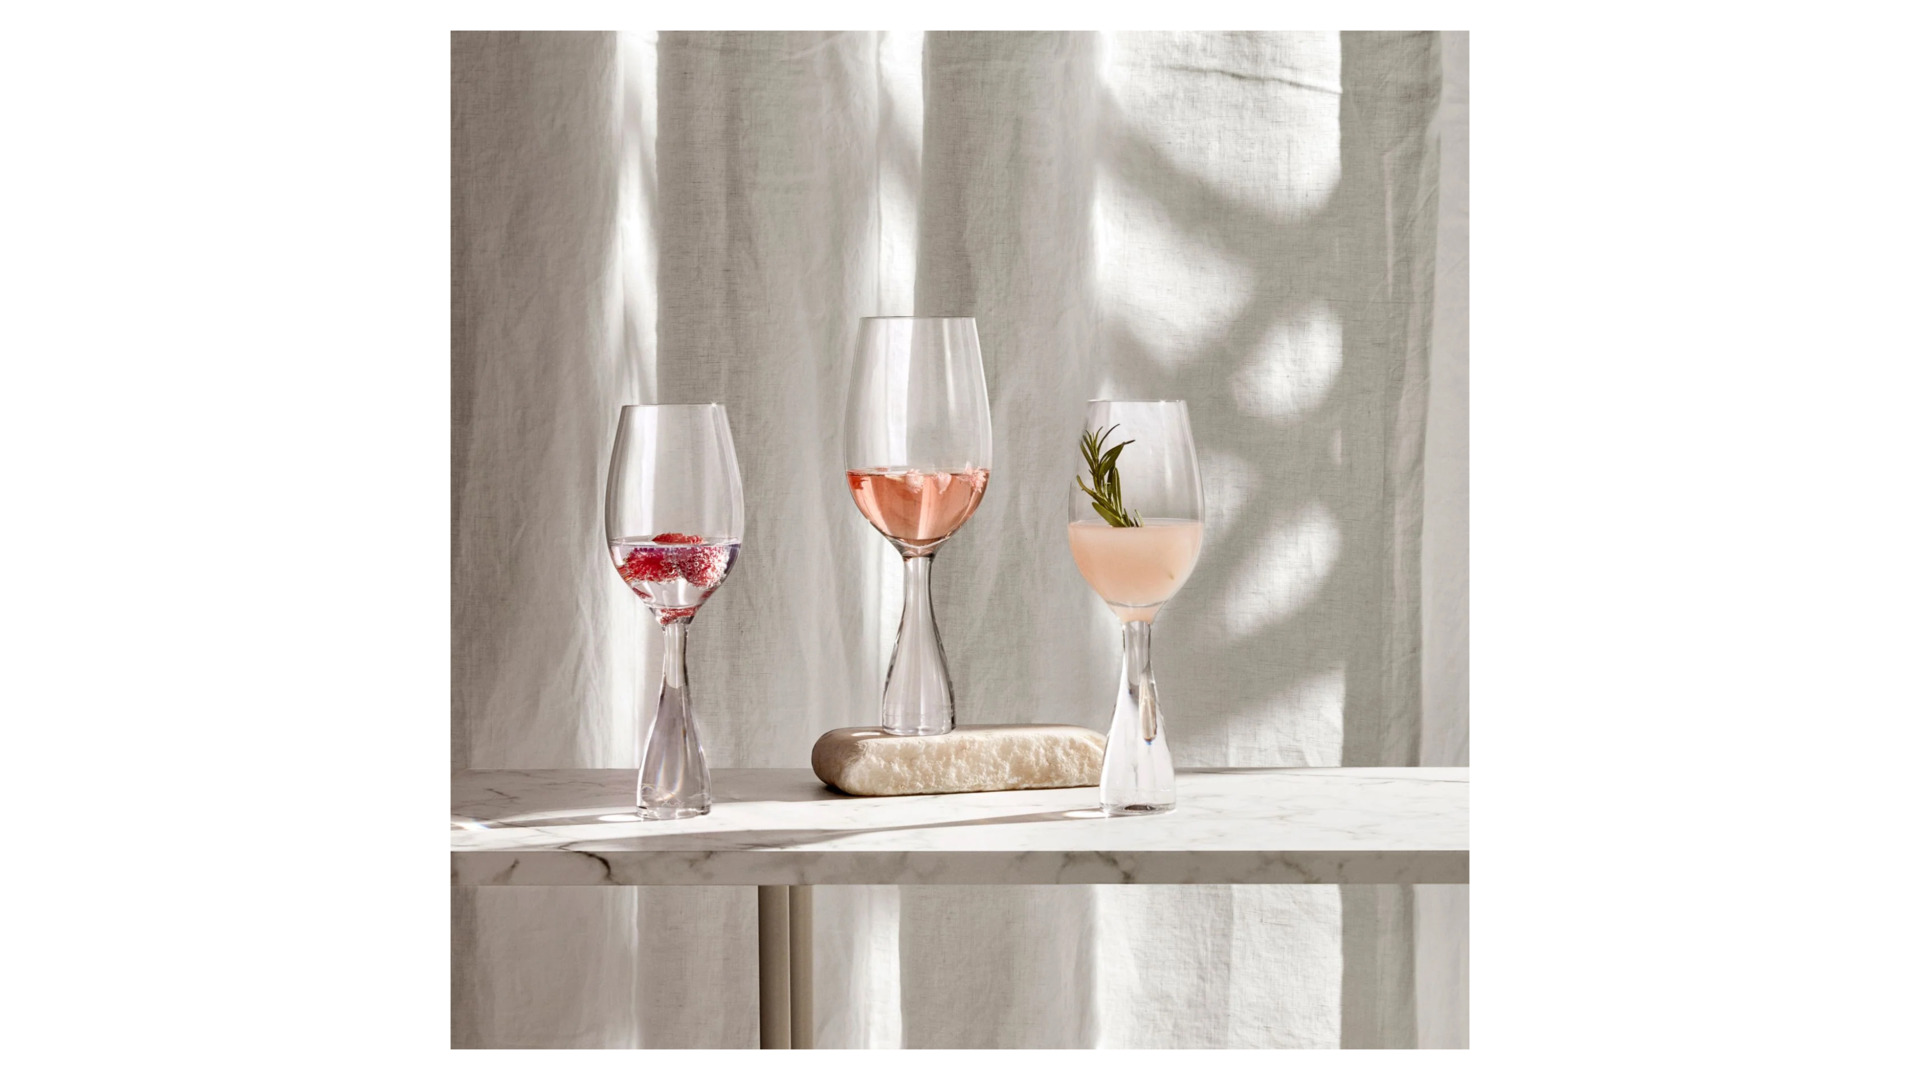 Набор бокалов для белого вина Nude Glass Wine Party 350 мл, 2 шт, стекло хрустальное